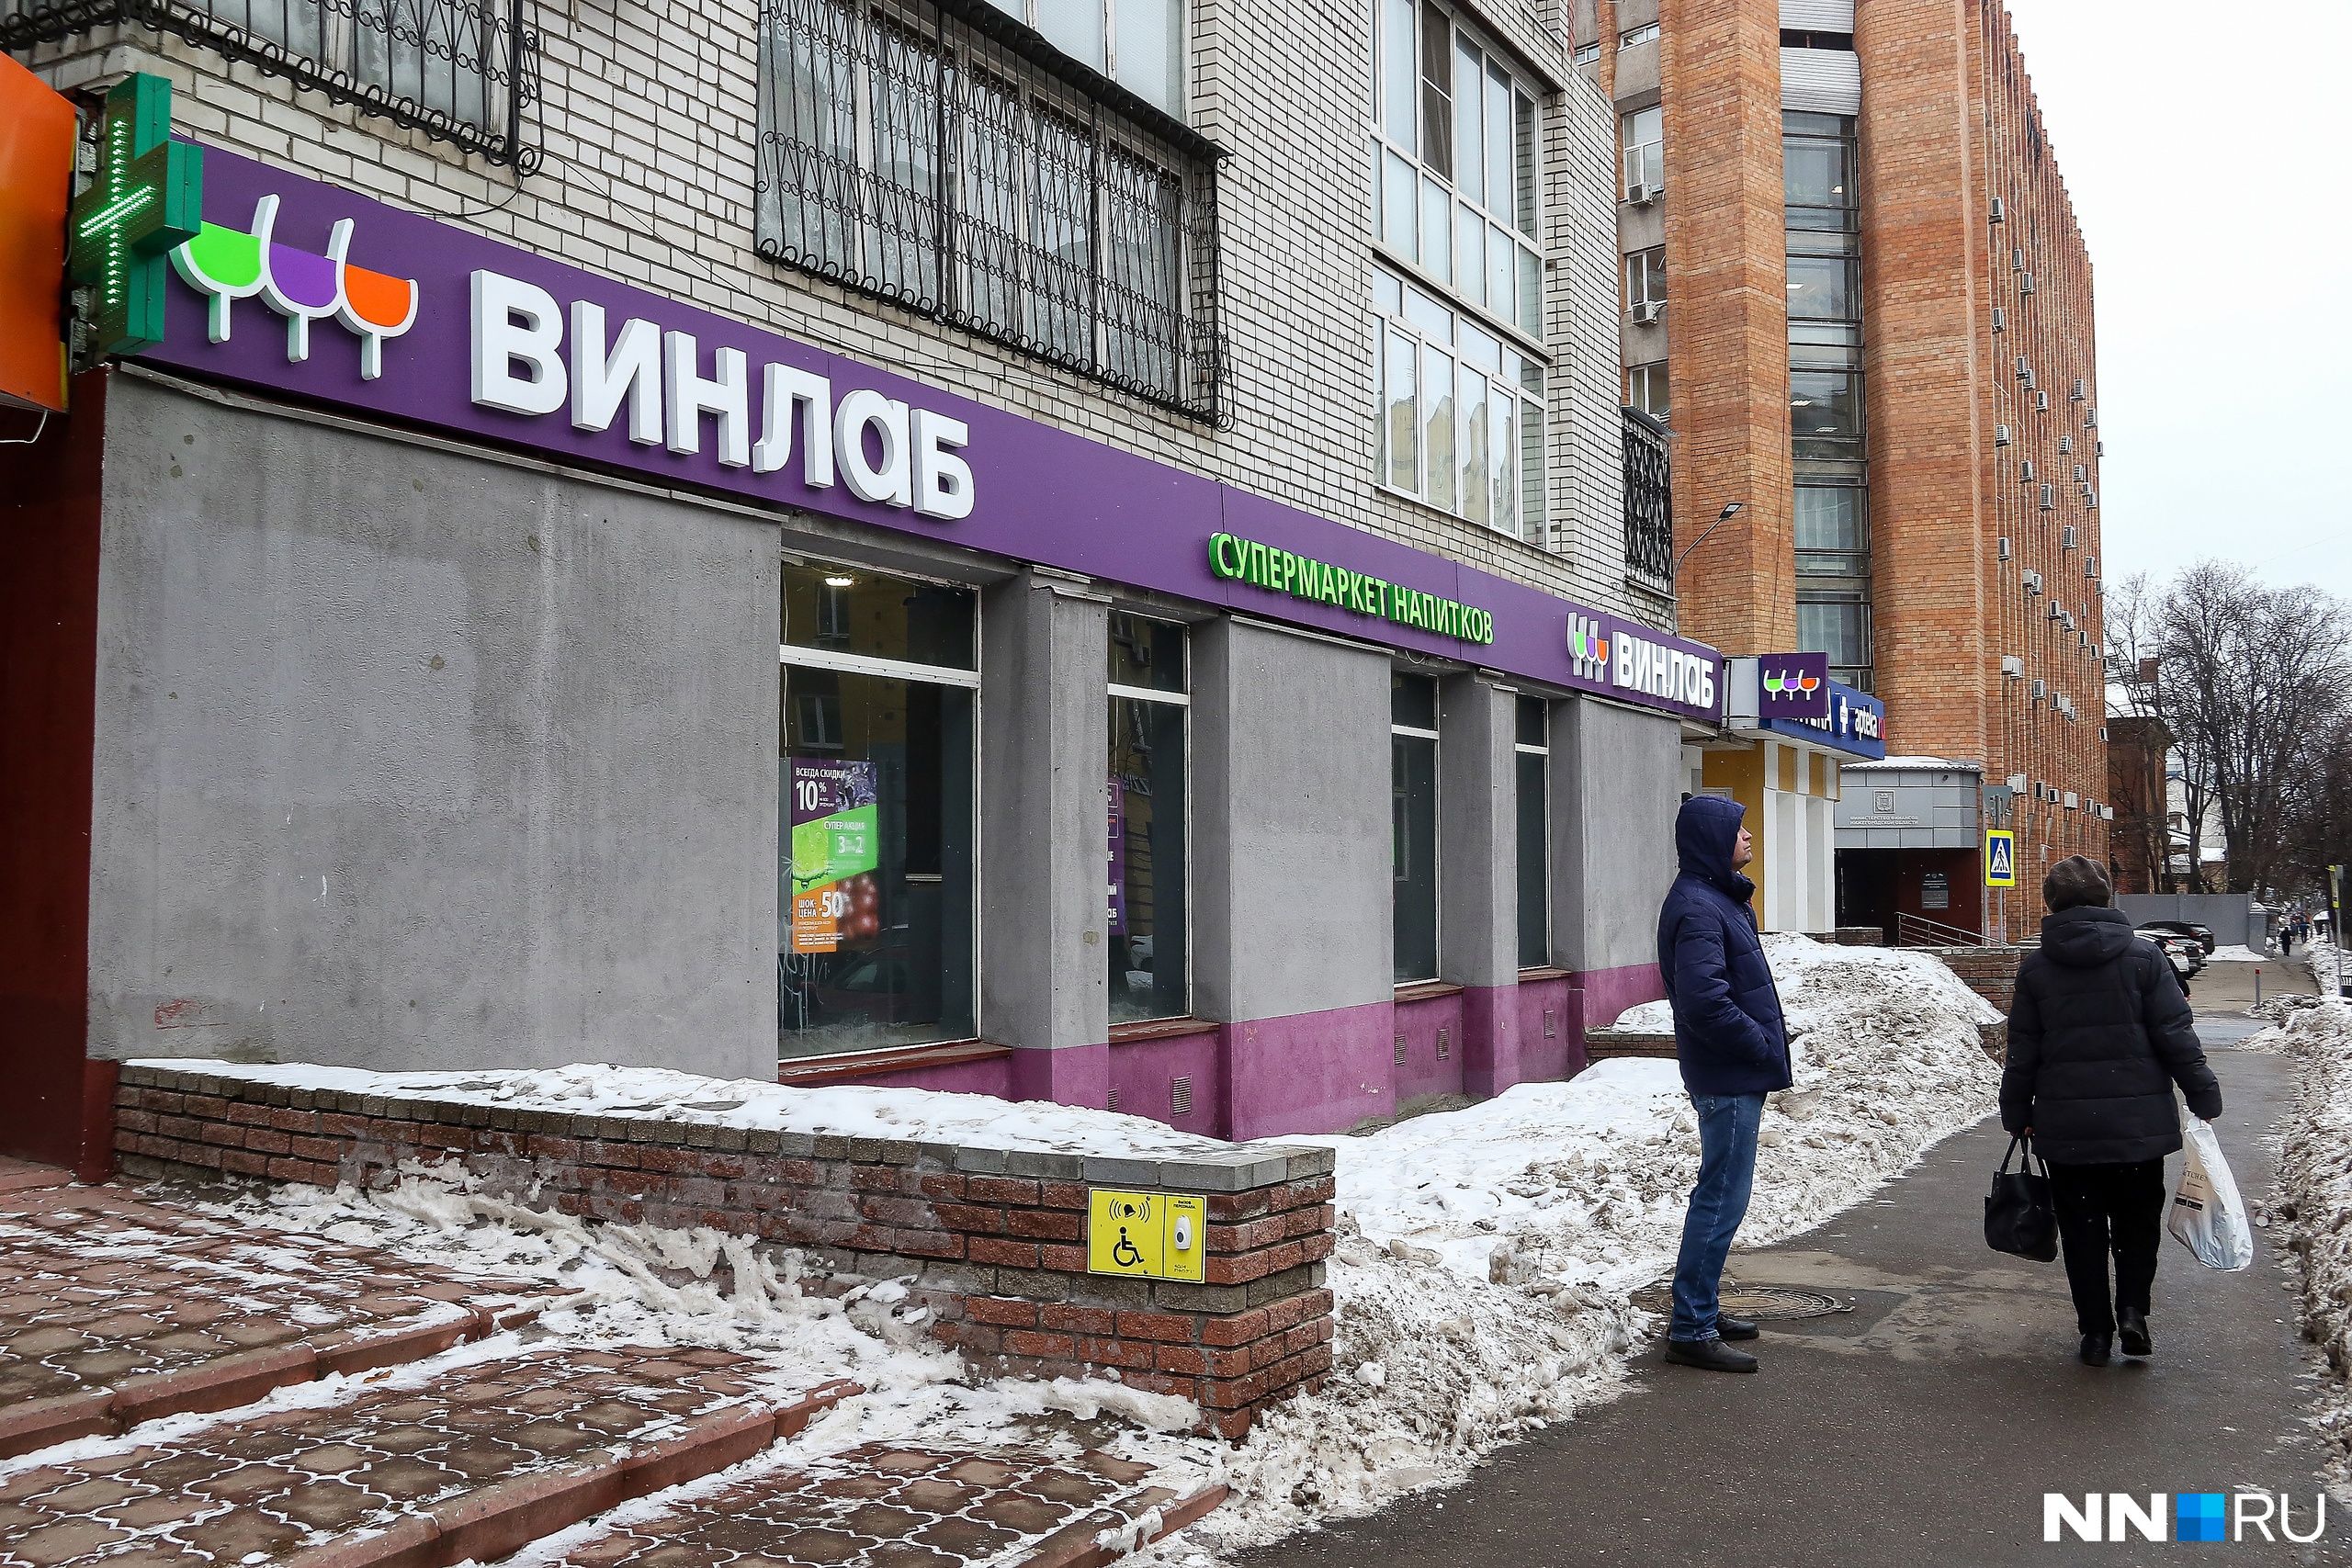 Магазины «ВинЛаб» пришли с Владивостока. Именно там появились первые торговые точки сети в 2010 году